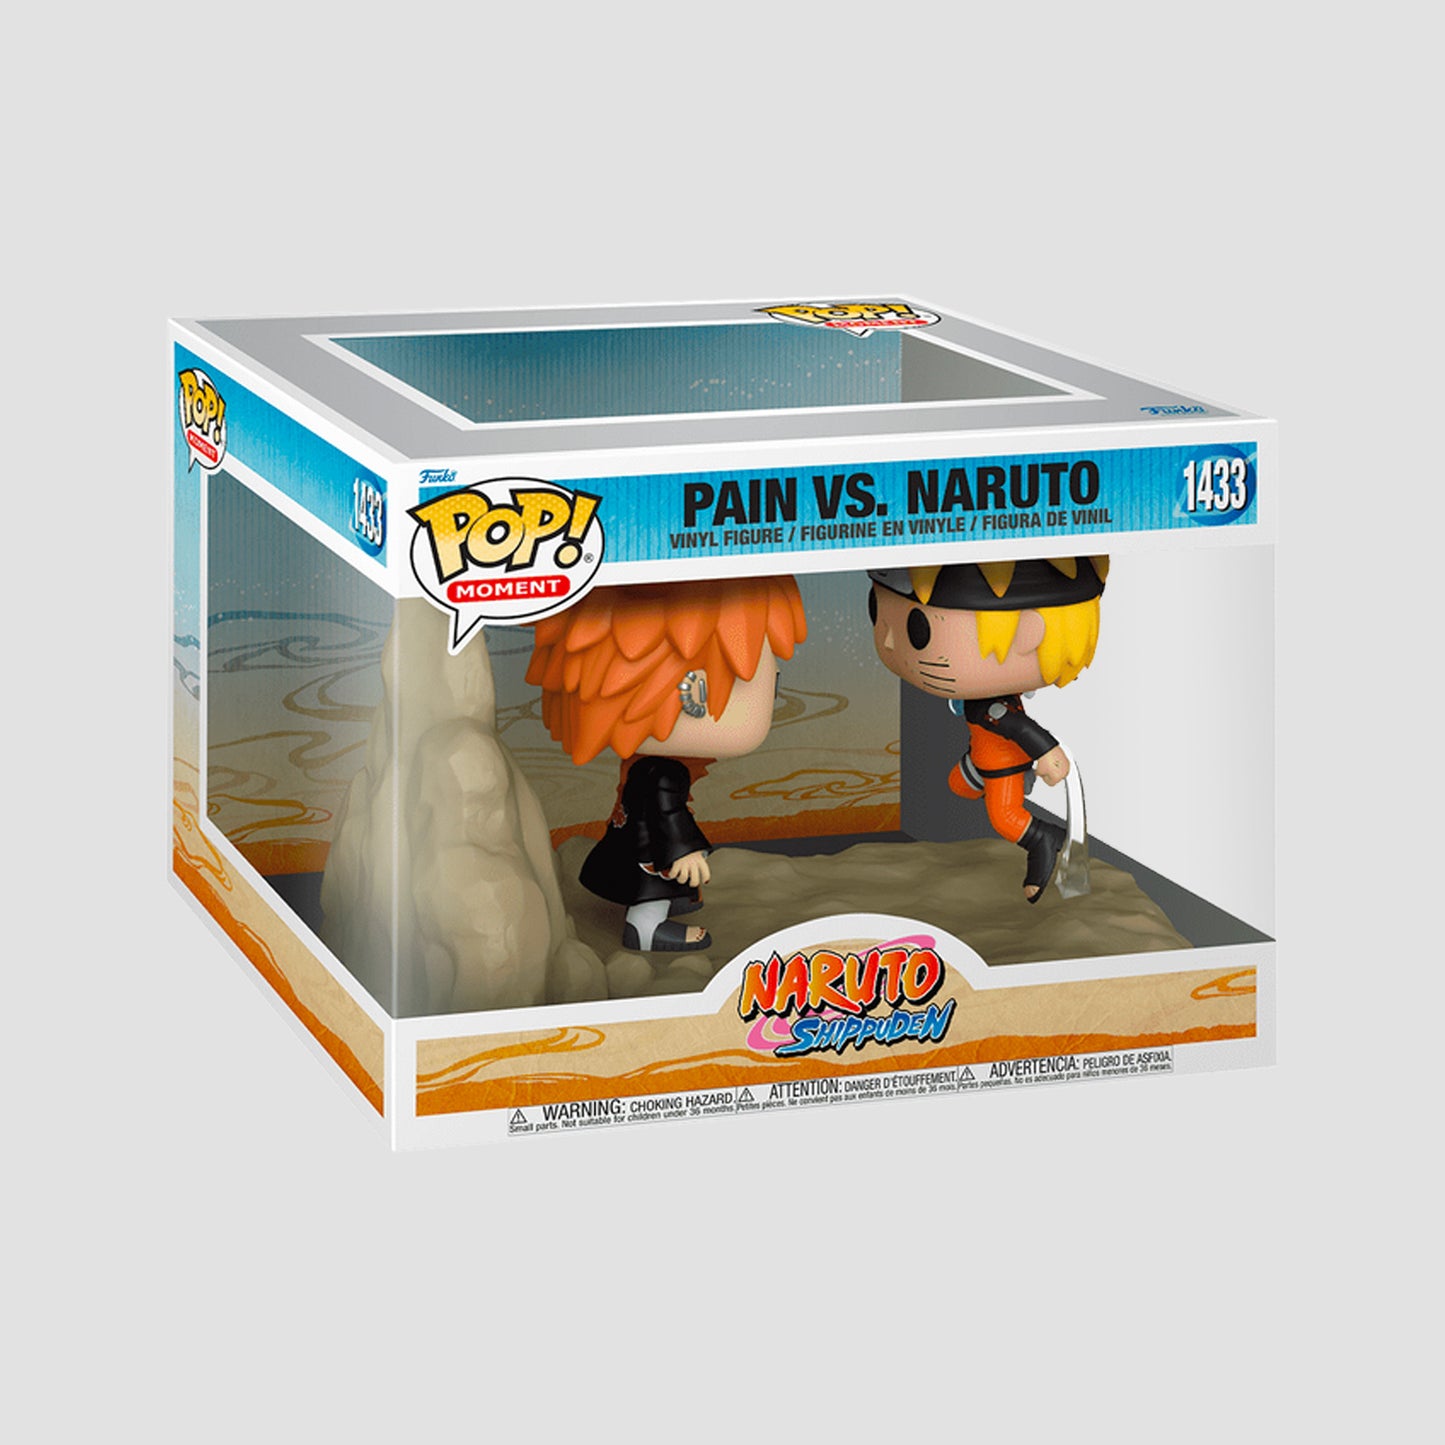 Pain Vs. Naruto (Naruto Shippuden) Funko Pop! Moment